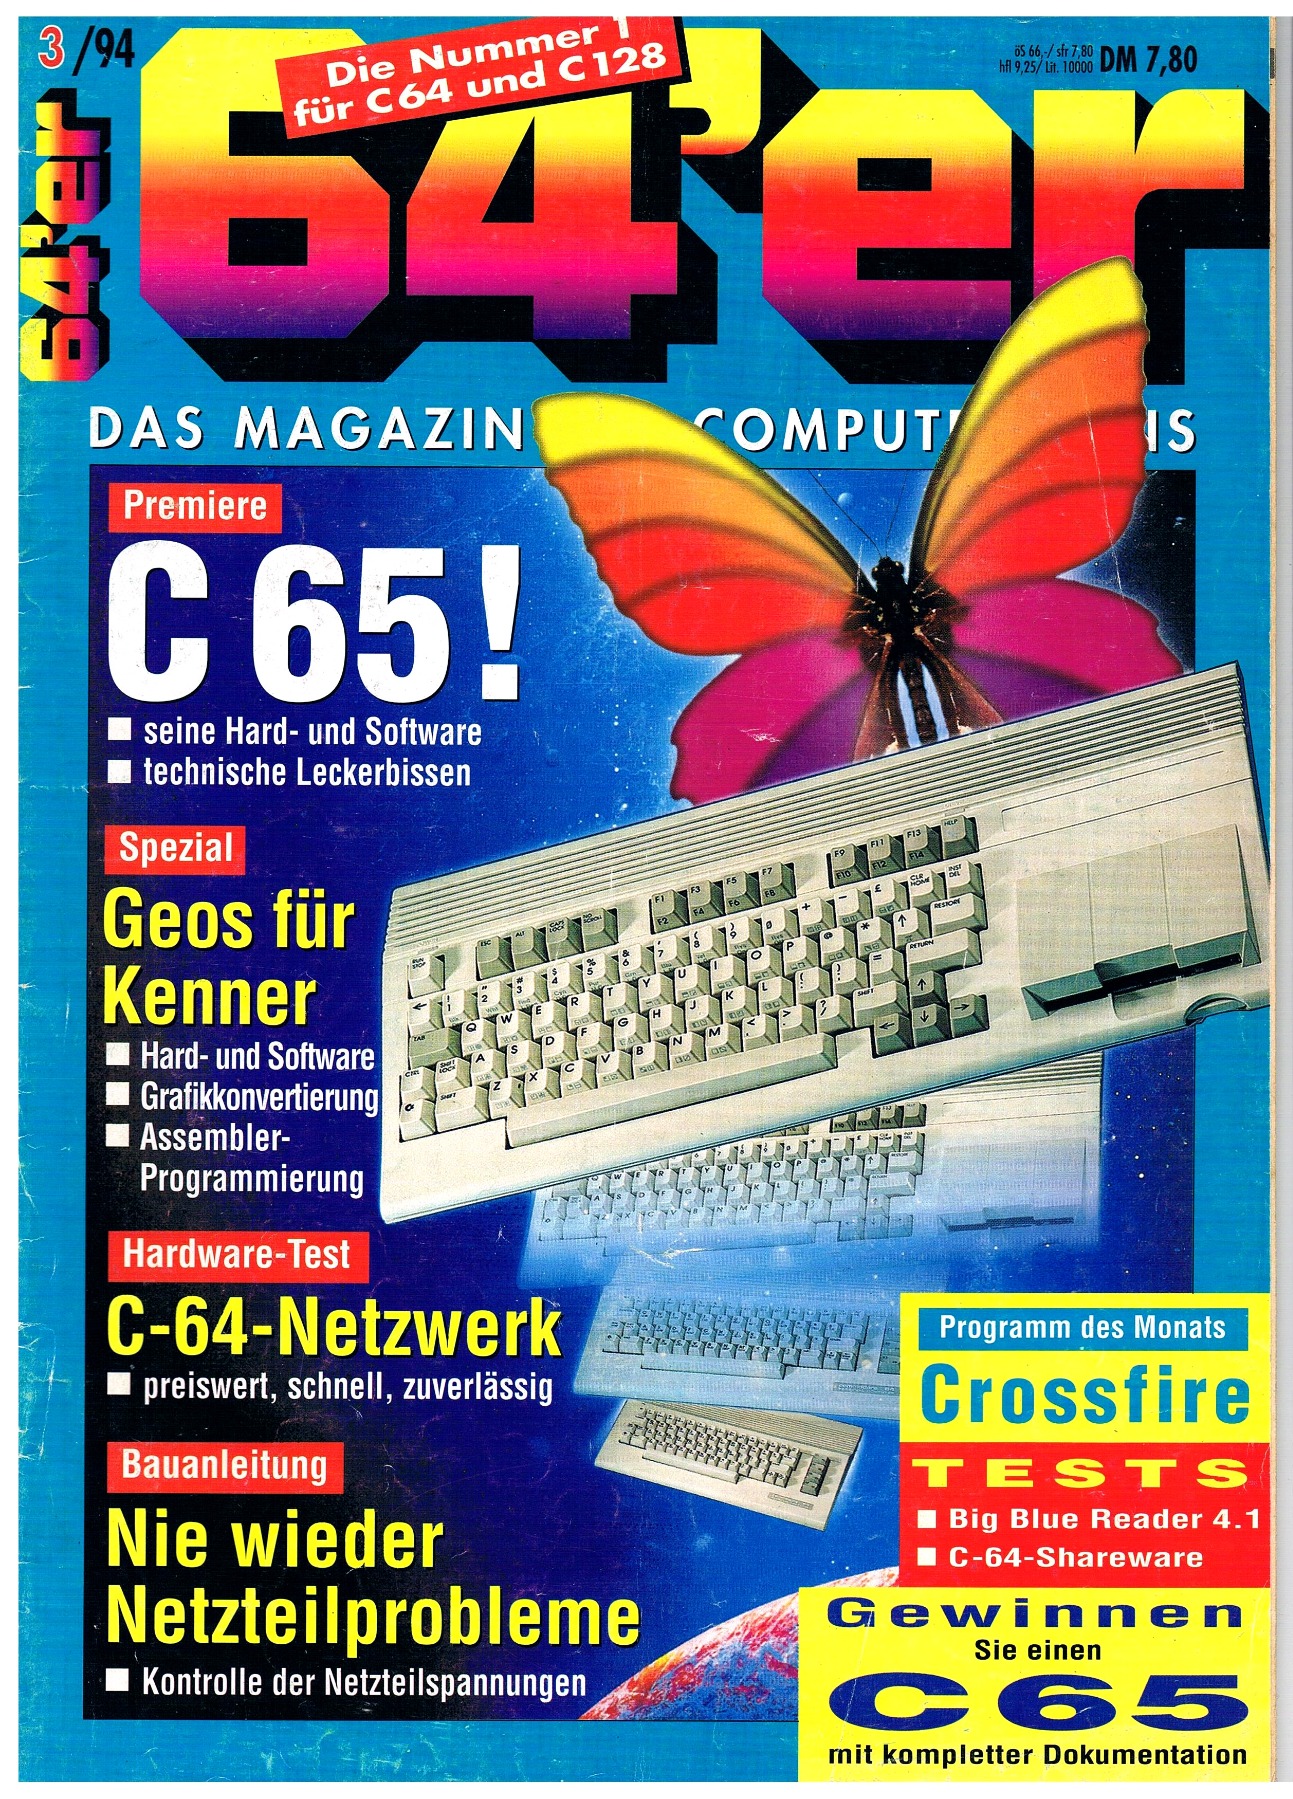 64er Magazin Ausgabe 3/94 1994